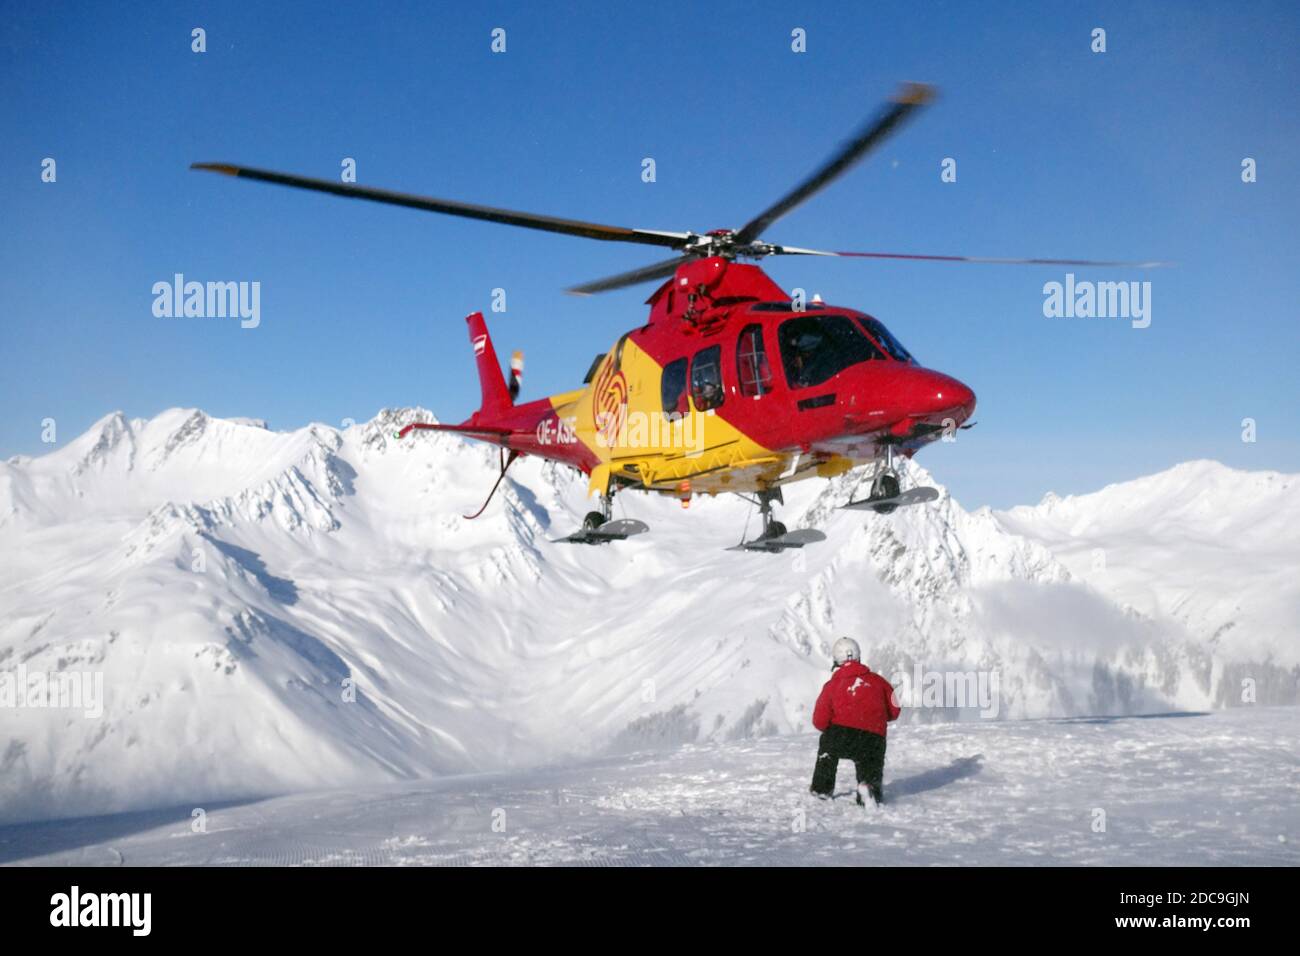 04.02.2019, Schruns, Vorarlberg, Autriche - hélicoptère de secours au-dessus de la pente. 00S190204D821CAROEX.JPG [AUTORISATION DU MODÈLE : NON, AUTORISATION DU PROPRIÉTAIRE : Banque D'Images